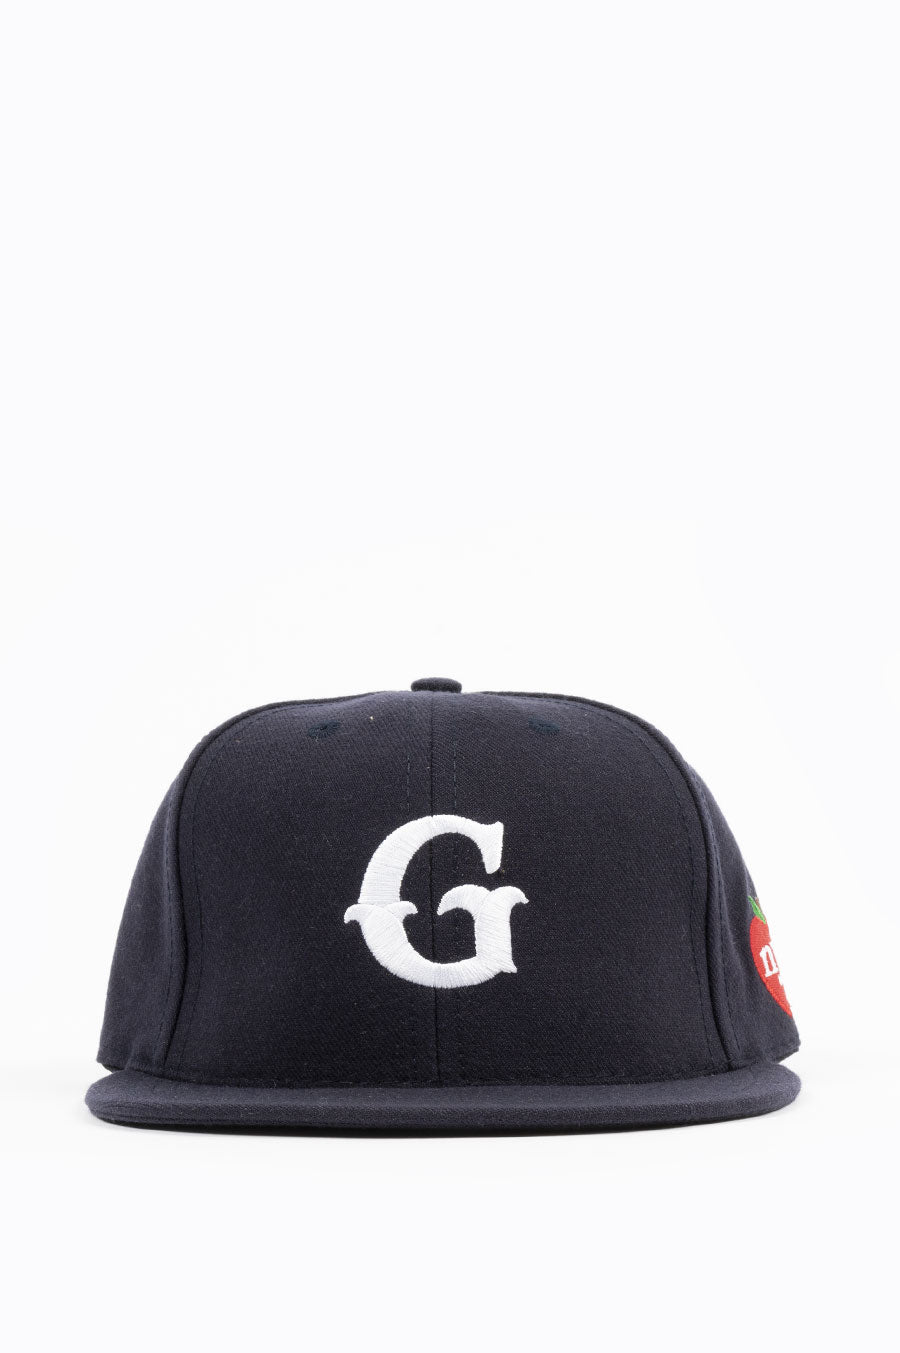 GARDENS & NAVY – BLENDS SEEDS G CAP NYC